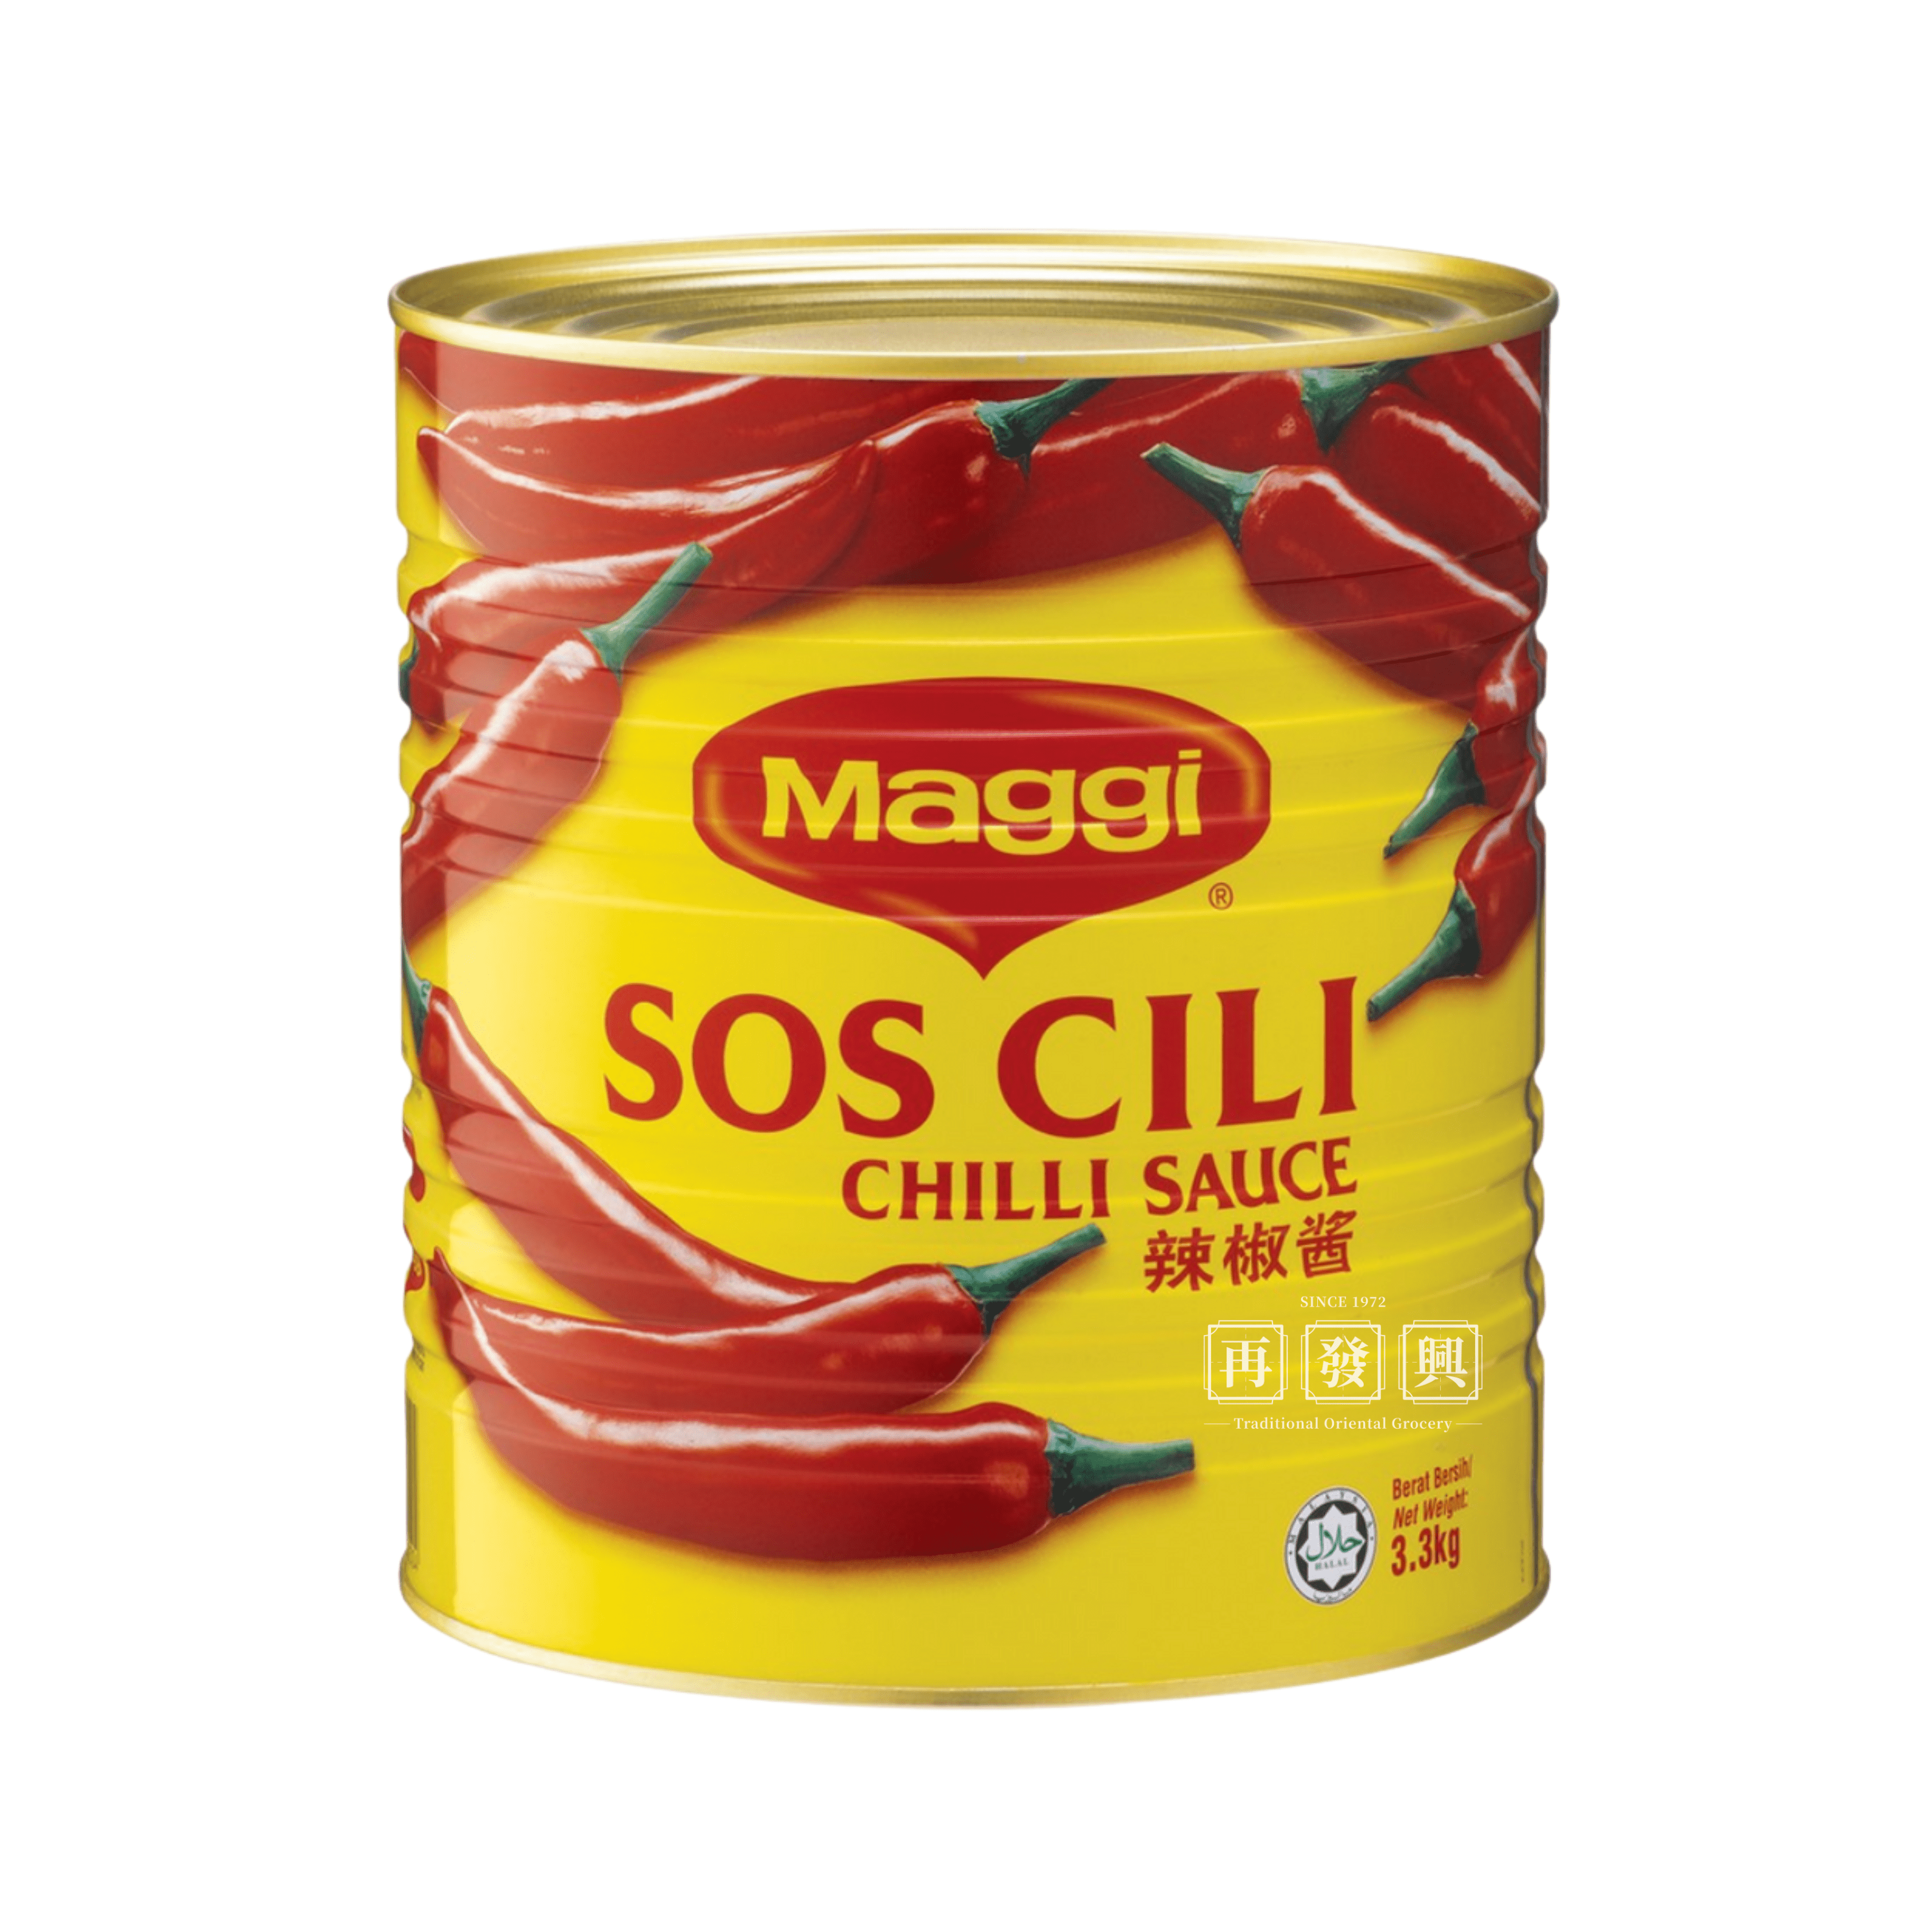 Maggi Chilli Sauce 3.3kg